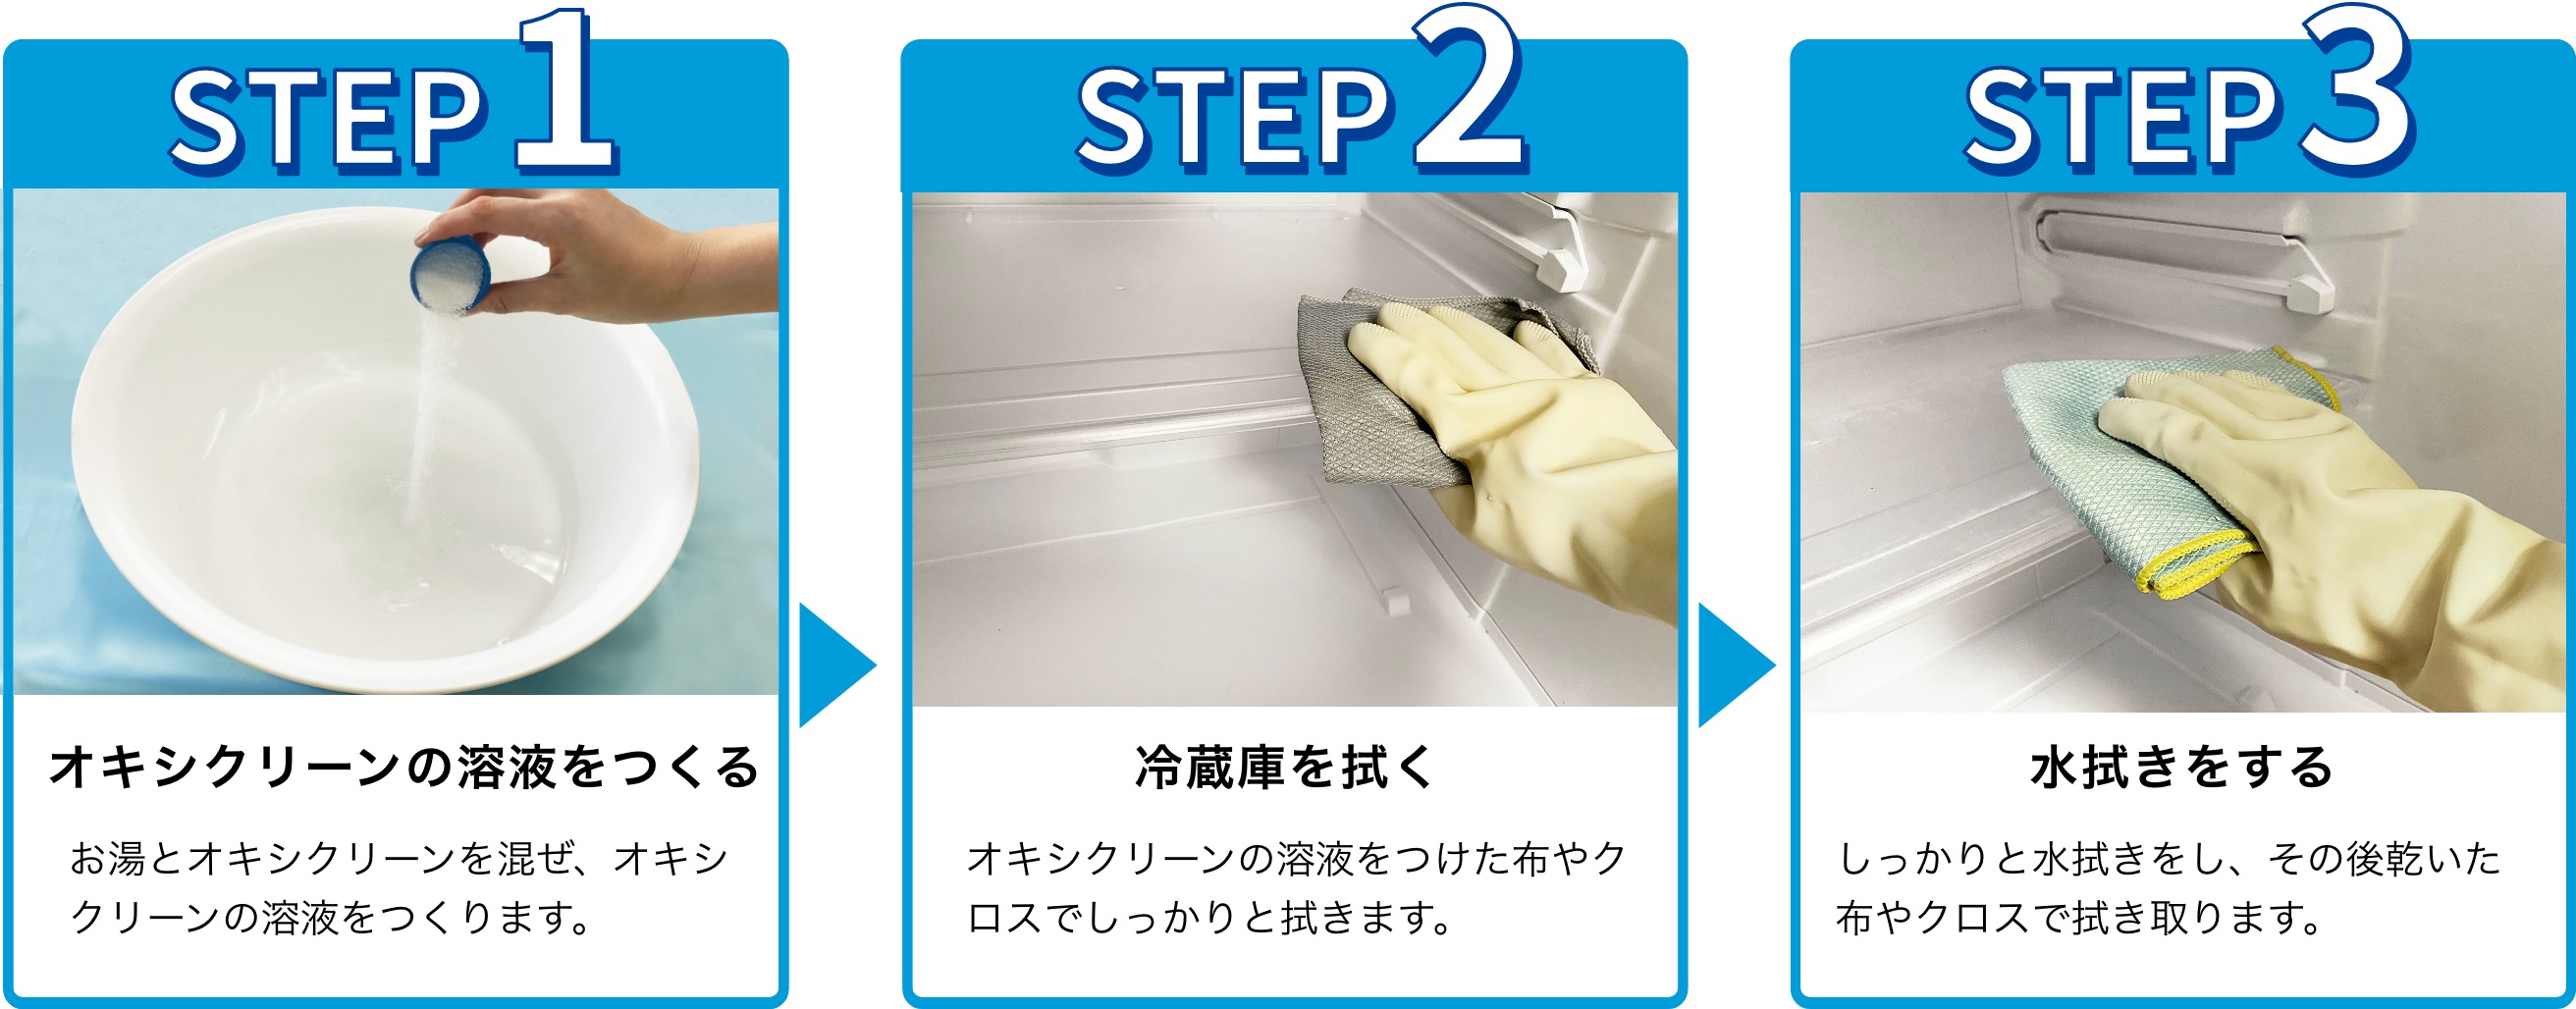 STEP1 オキシクリーンの溶液をつくる お湯とオキシクリーンを混ぜ、オキシクリーンの溶液をつくります。 STEP2 冷蔵庫を拭く オキシクリーンの溶液をつけた布やクロスでしっかりと拭きます。STEP3 水拭きをする しっかりと水拭きをし、その後乾いた布やクロスで拭き取ります。